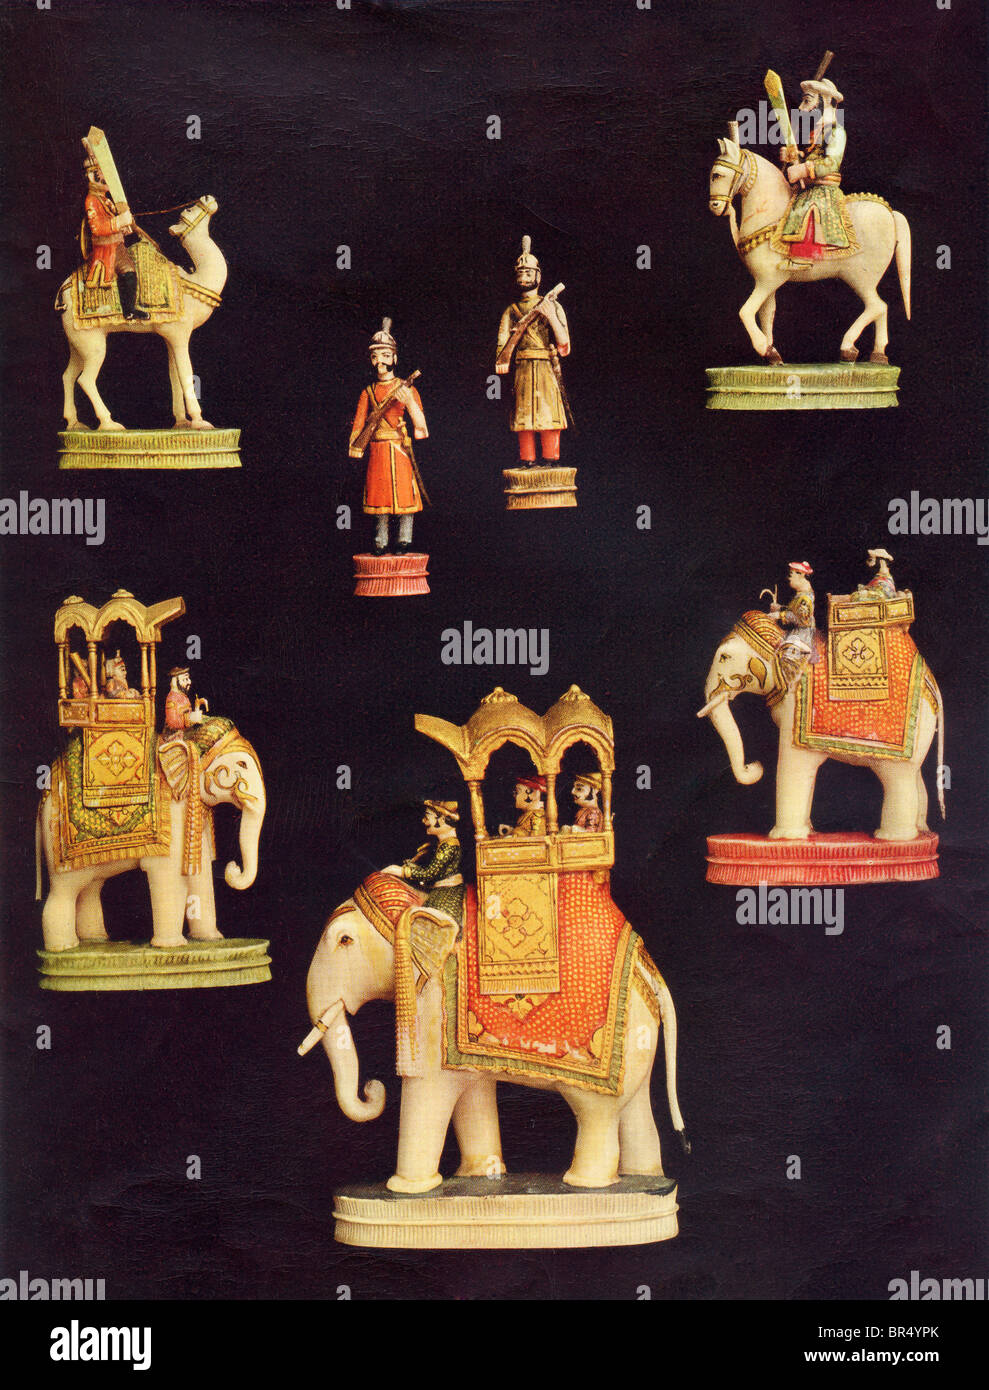 Pezzi da un completo set di scacchi in scolpiti e di colore avorio. Fatto a Delhi, India c.1790 per la iniziata Samru. Foto Stock